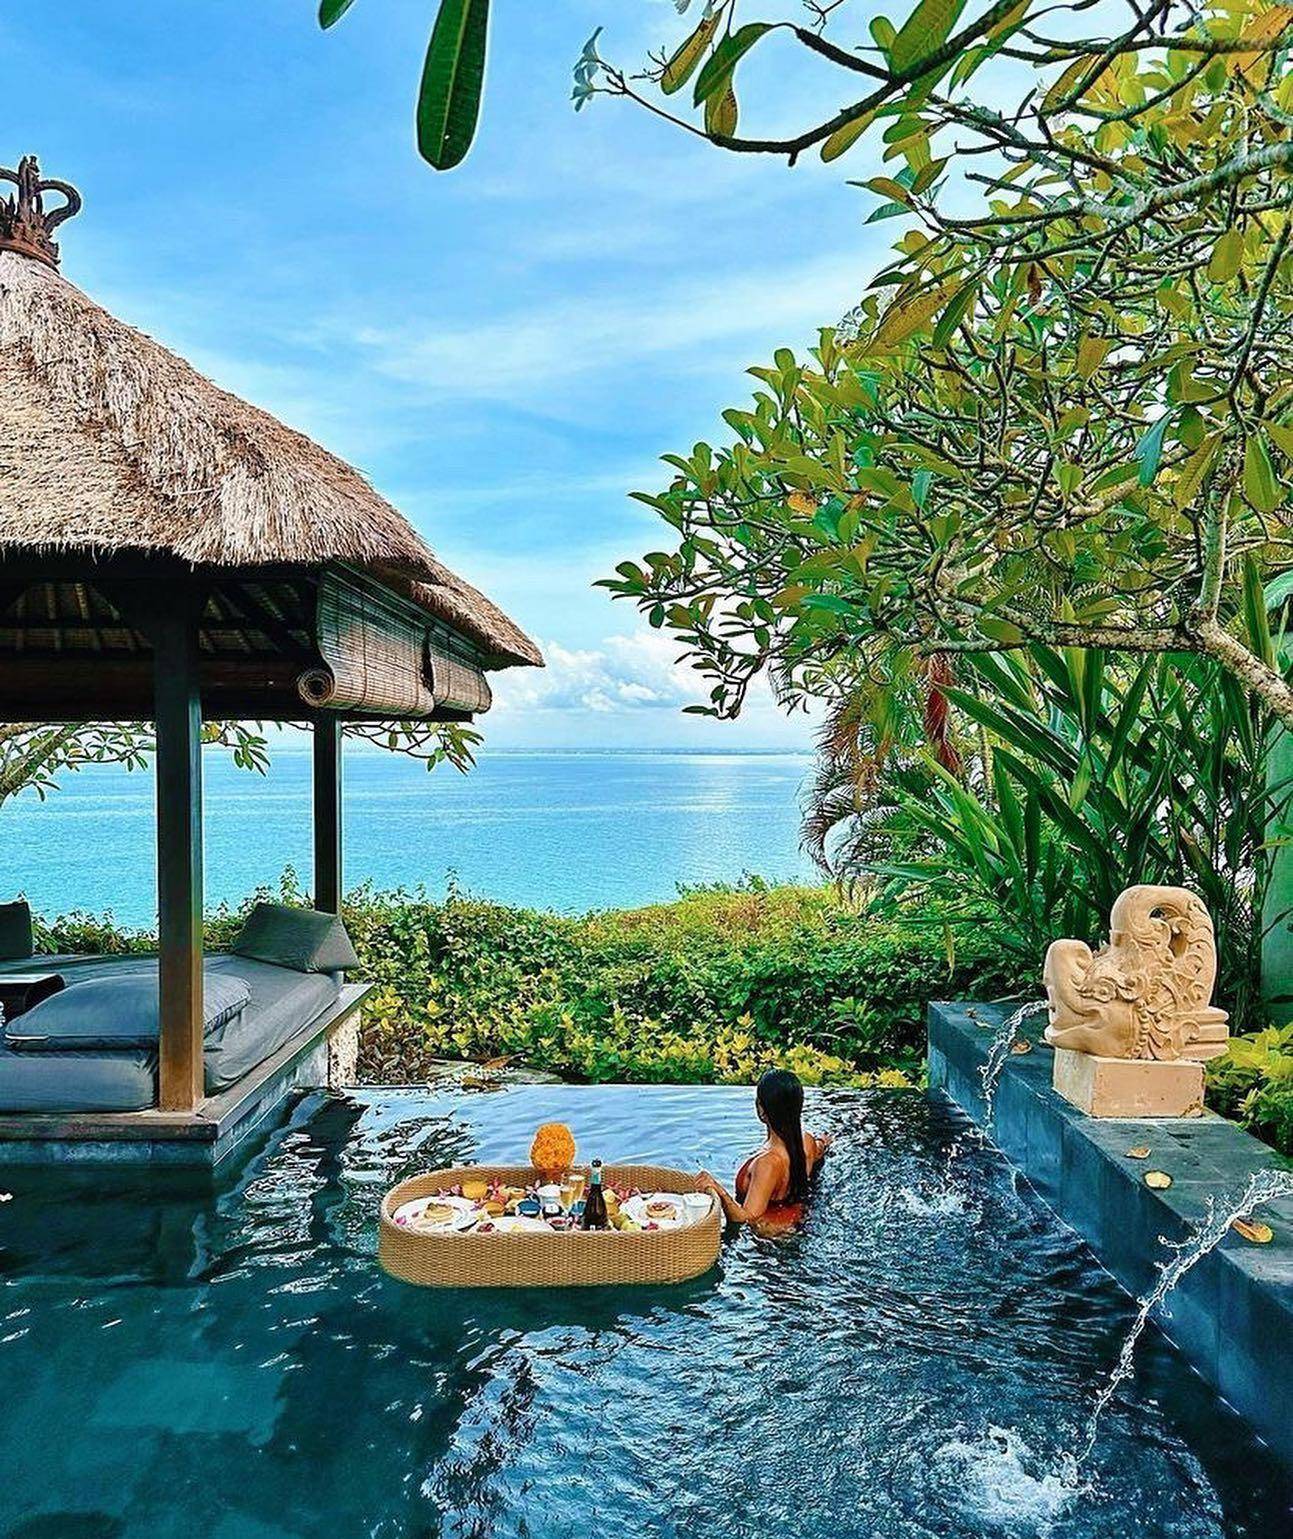 巴厘岛阿雅娜,超美悬崖泳池,悬崖酒吧,网红泳池,等你来打卡